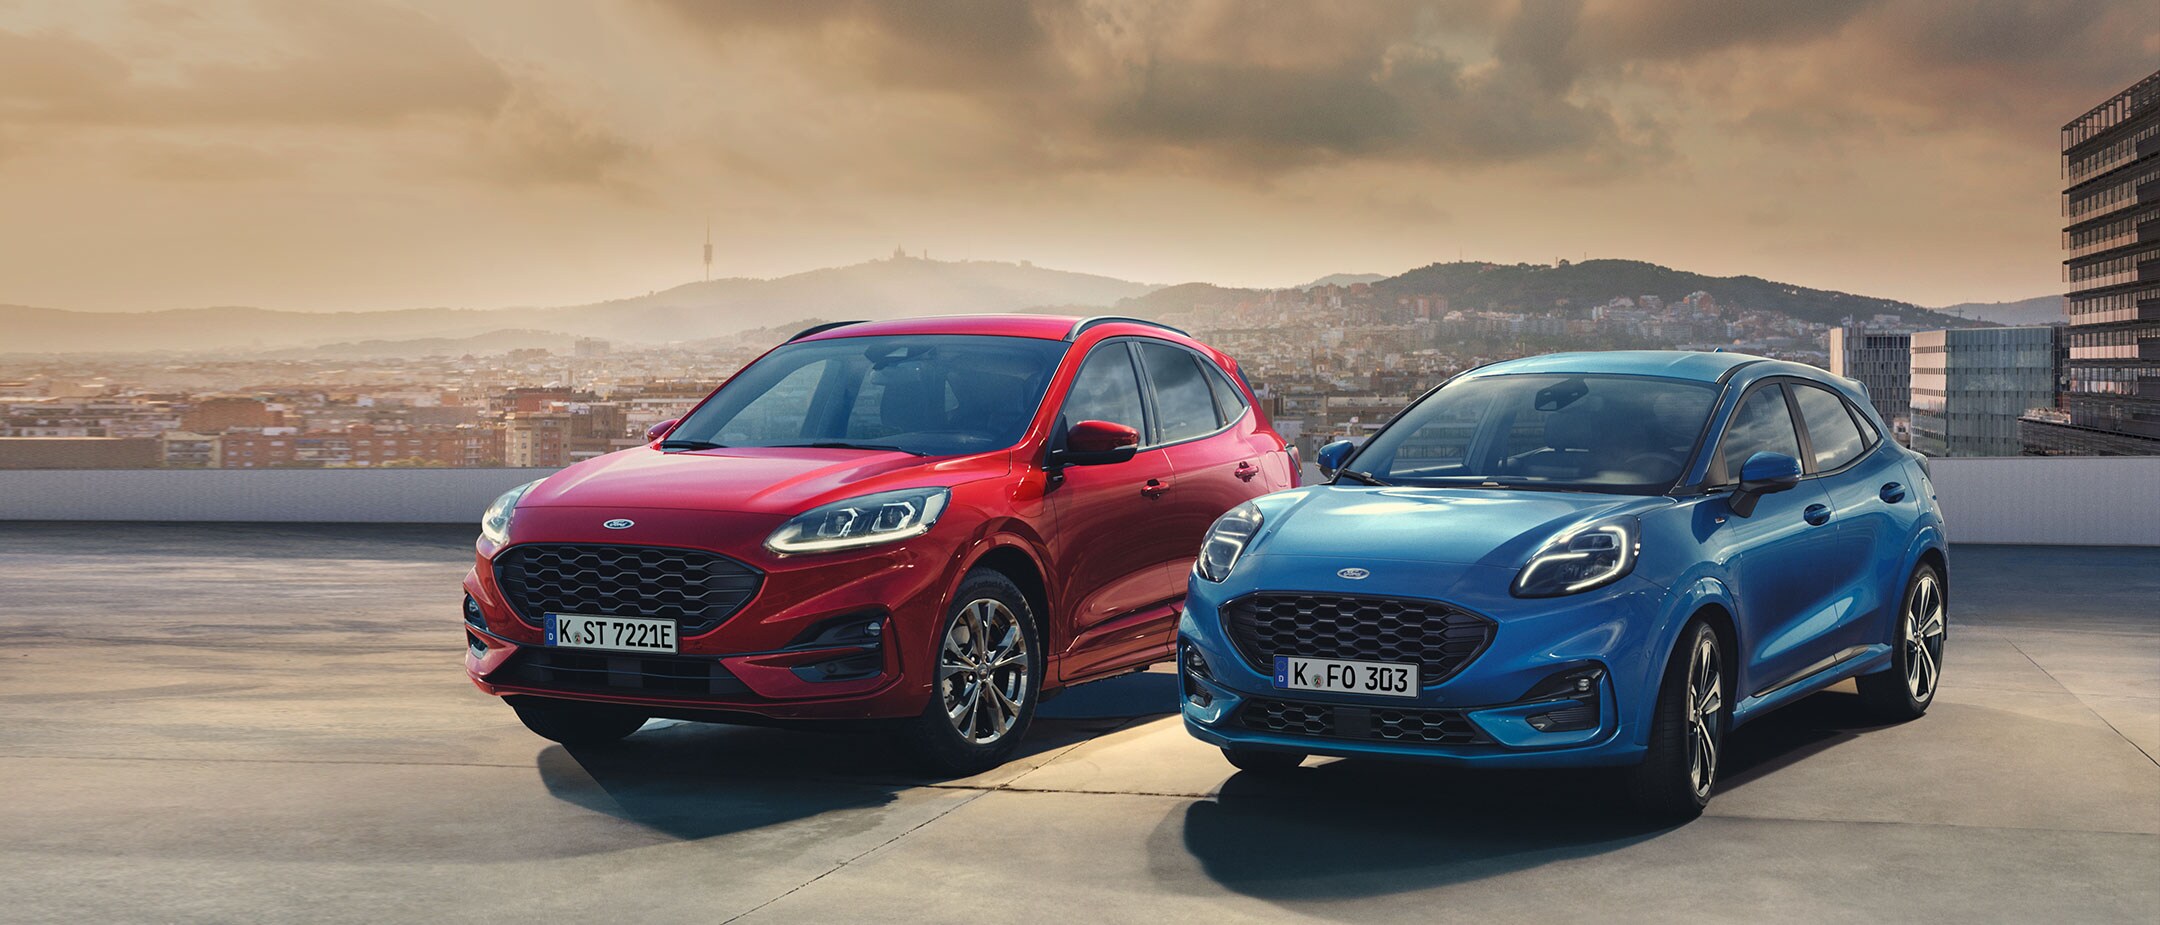 Ford Kuga in Rot, ¾ Frontansicht und Ford Puma in Blau, ¾ Frontansicht auf einem Parkdeck stehend